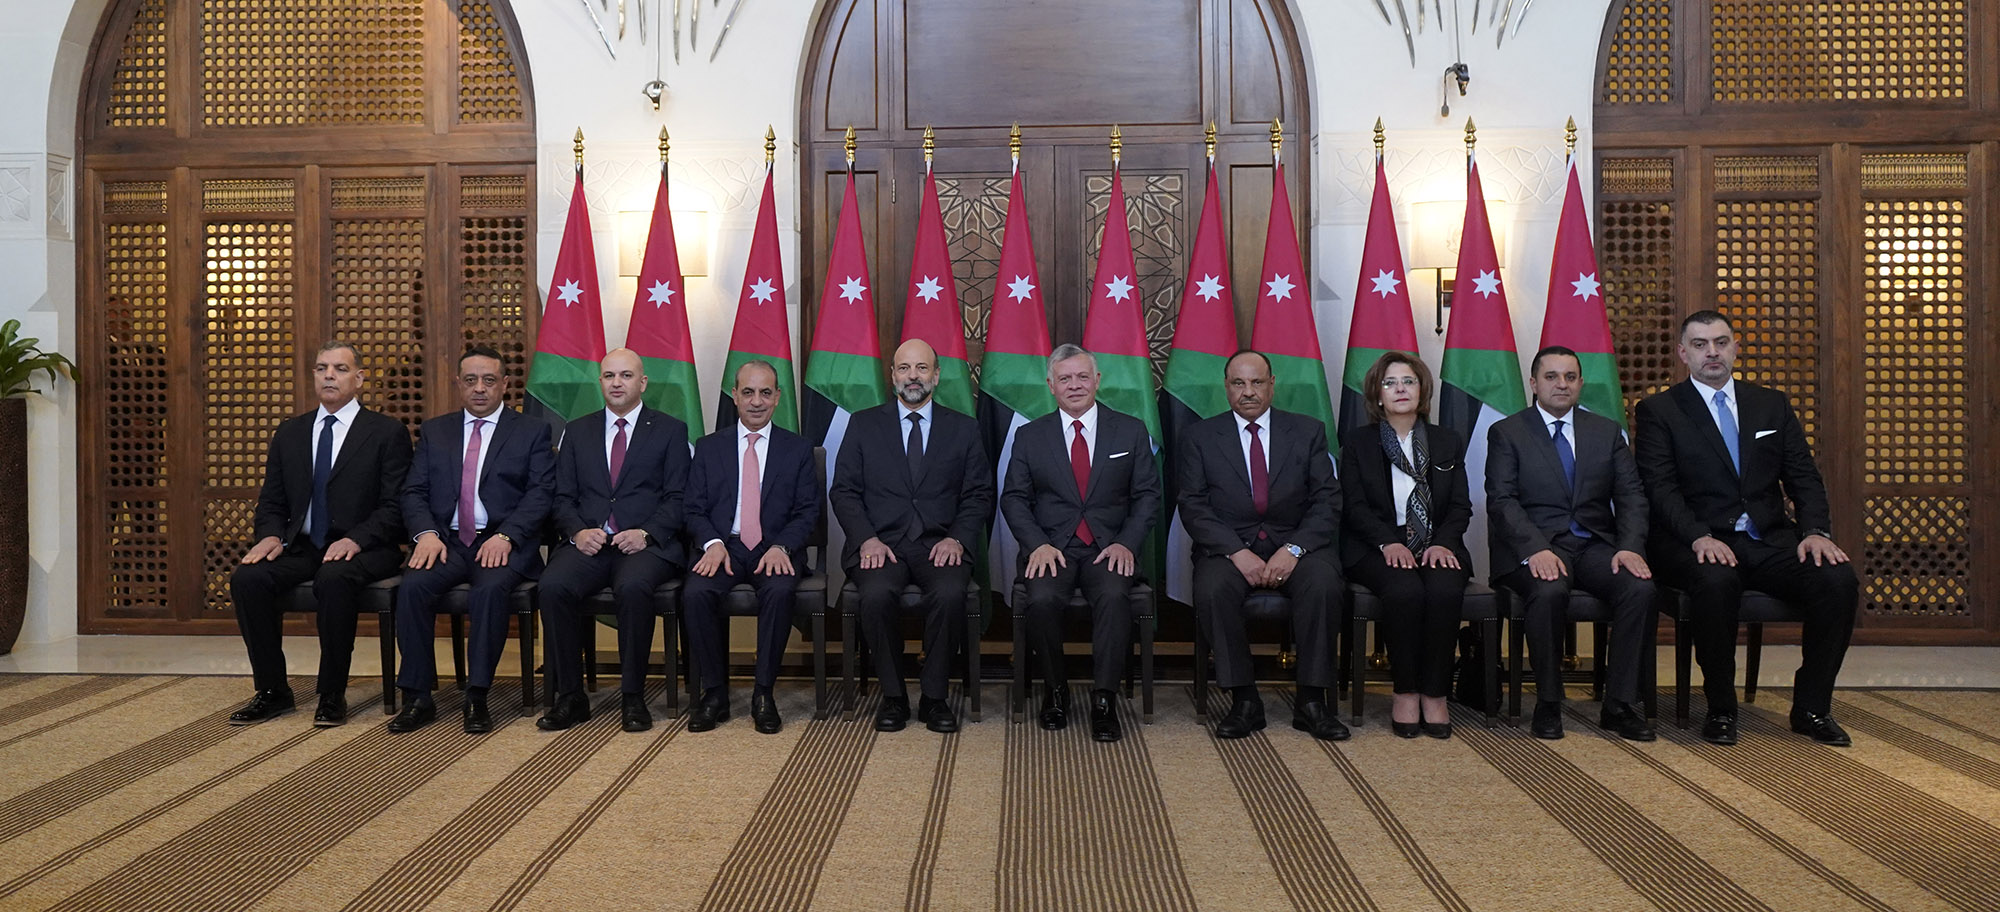 وزراء بعد أداء اليمين الدستورية أمام جلالة الملك. الديوان الملكي الهاشمي